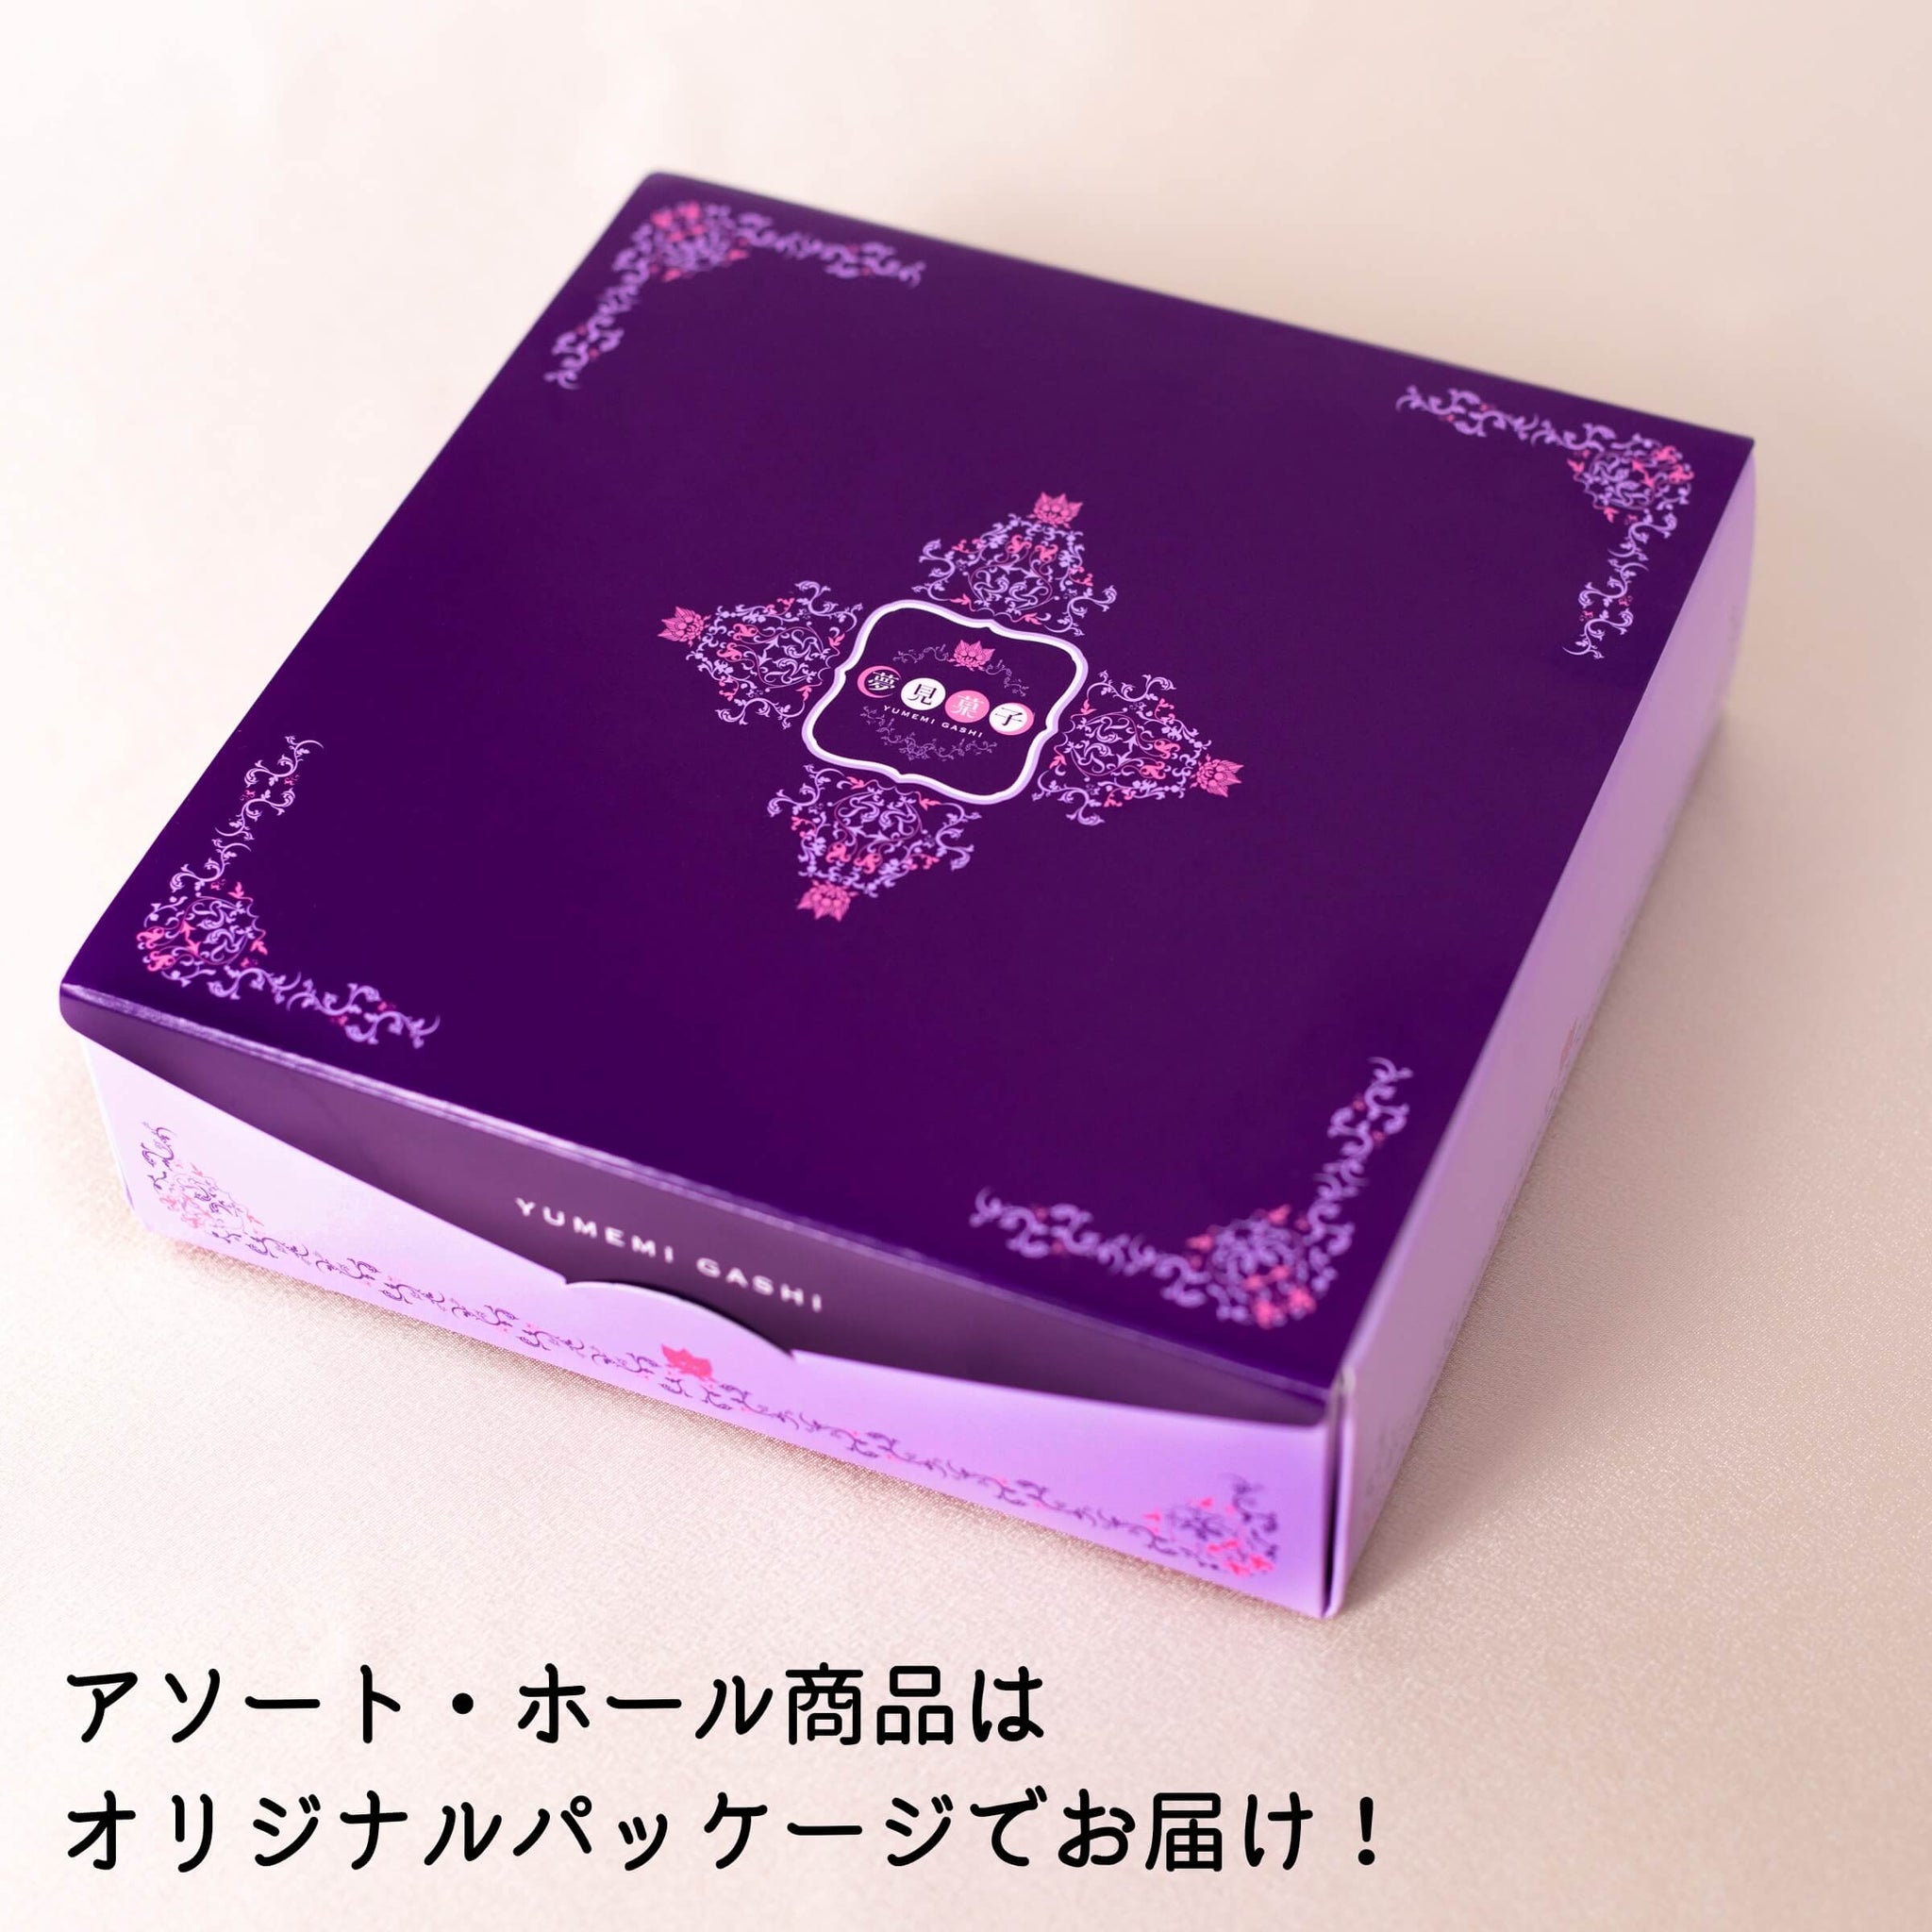 「夢見菓子」オリジナルパッケージのご紹介！